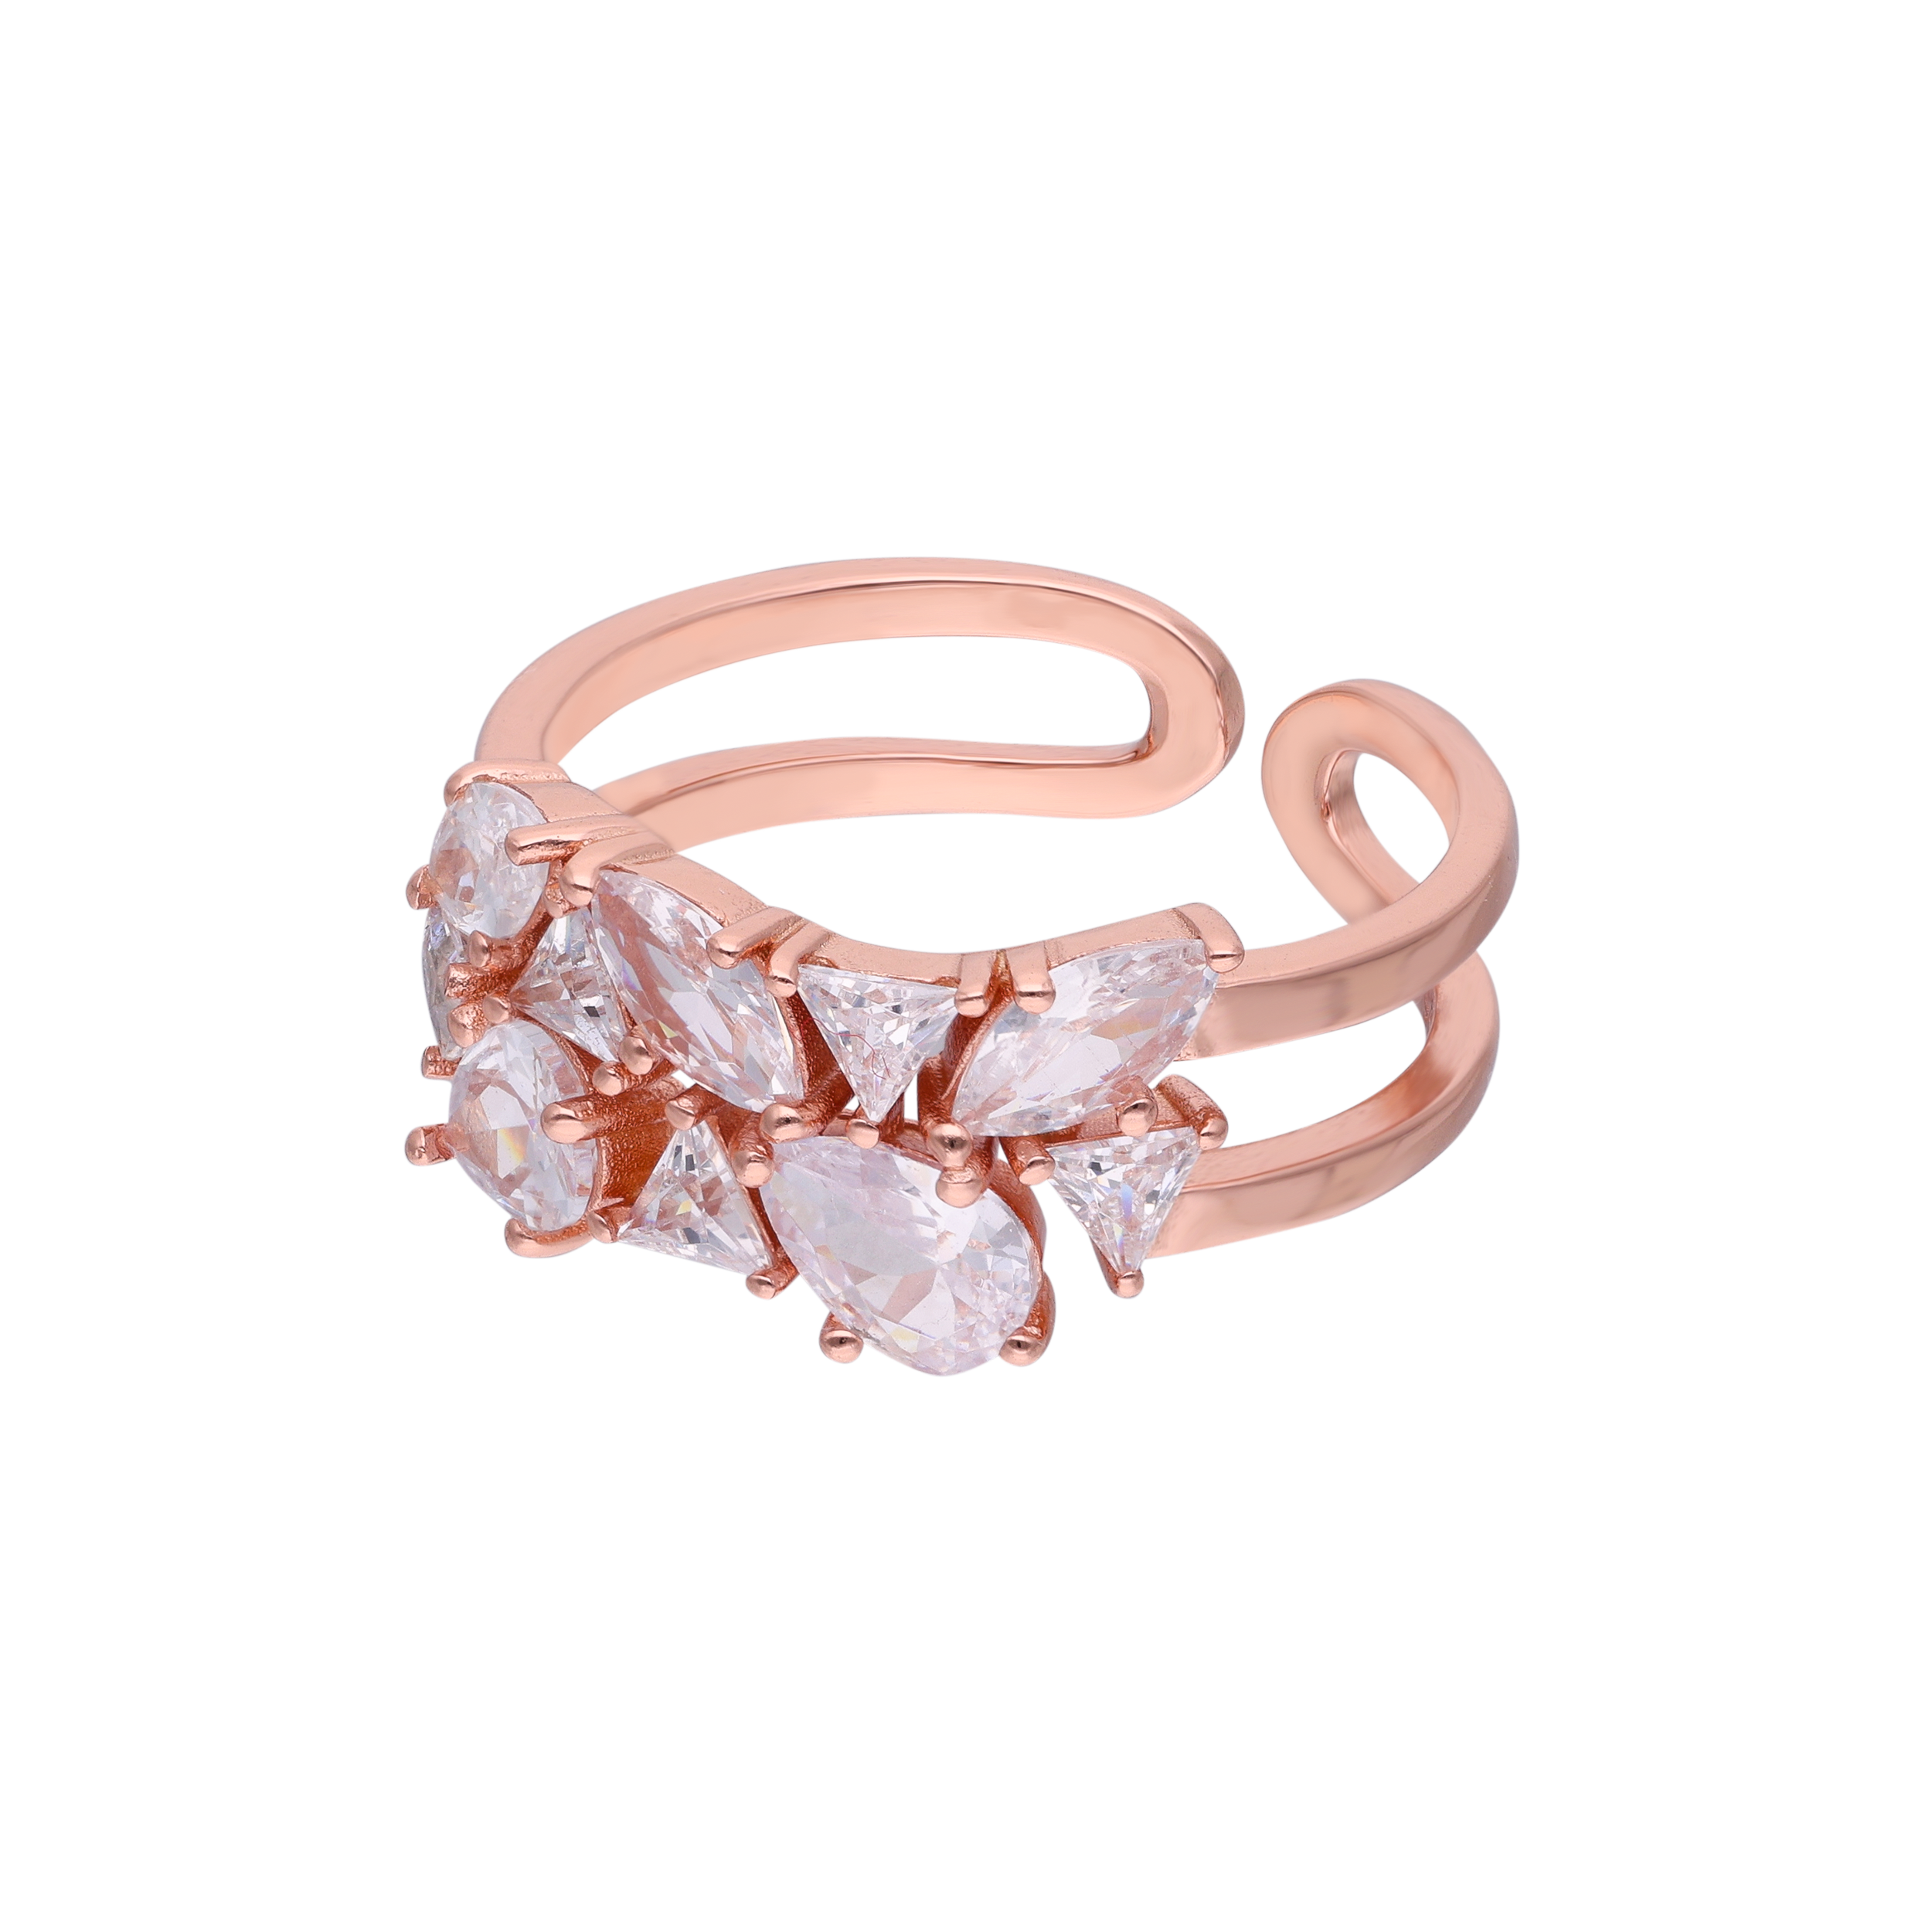 Rose Gold Silver Ring | SKU: 0019211541, 0019211930